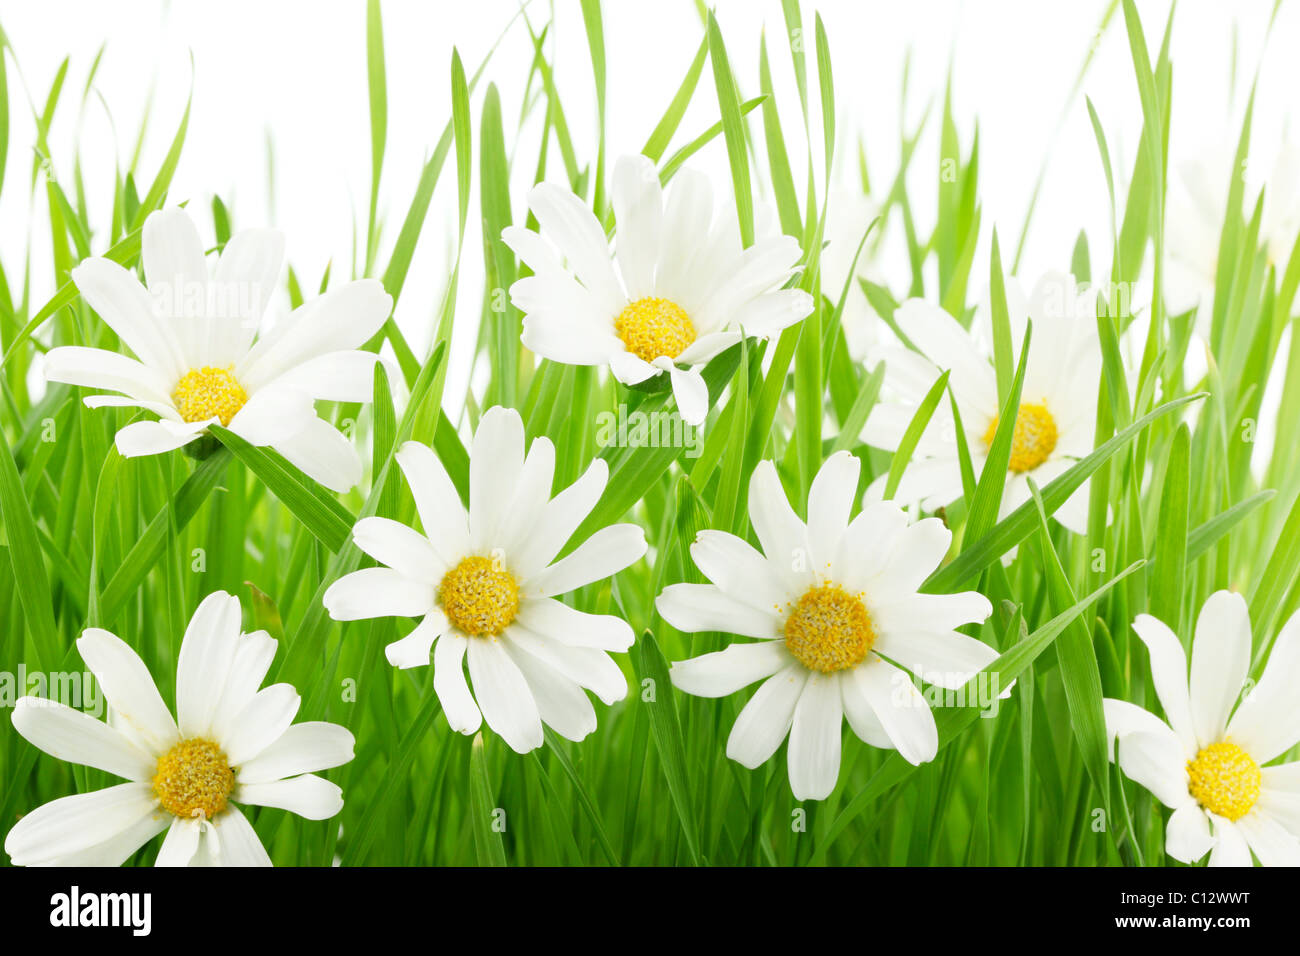 Daisy bianca fiori in erba verde Foto Stock